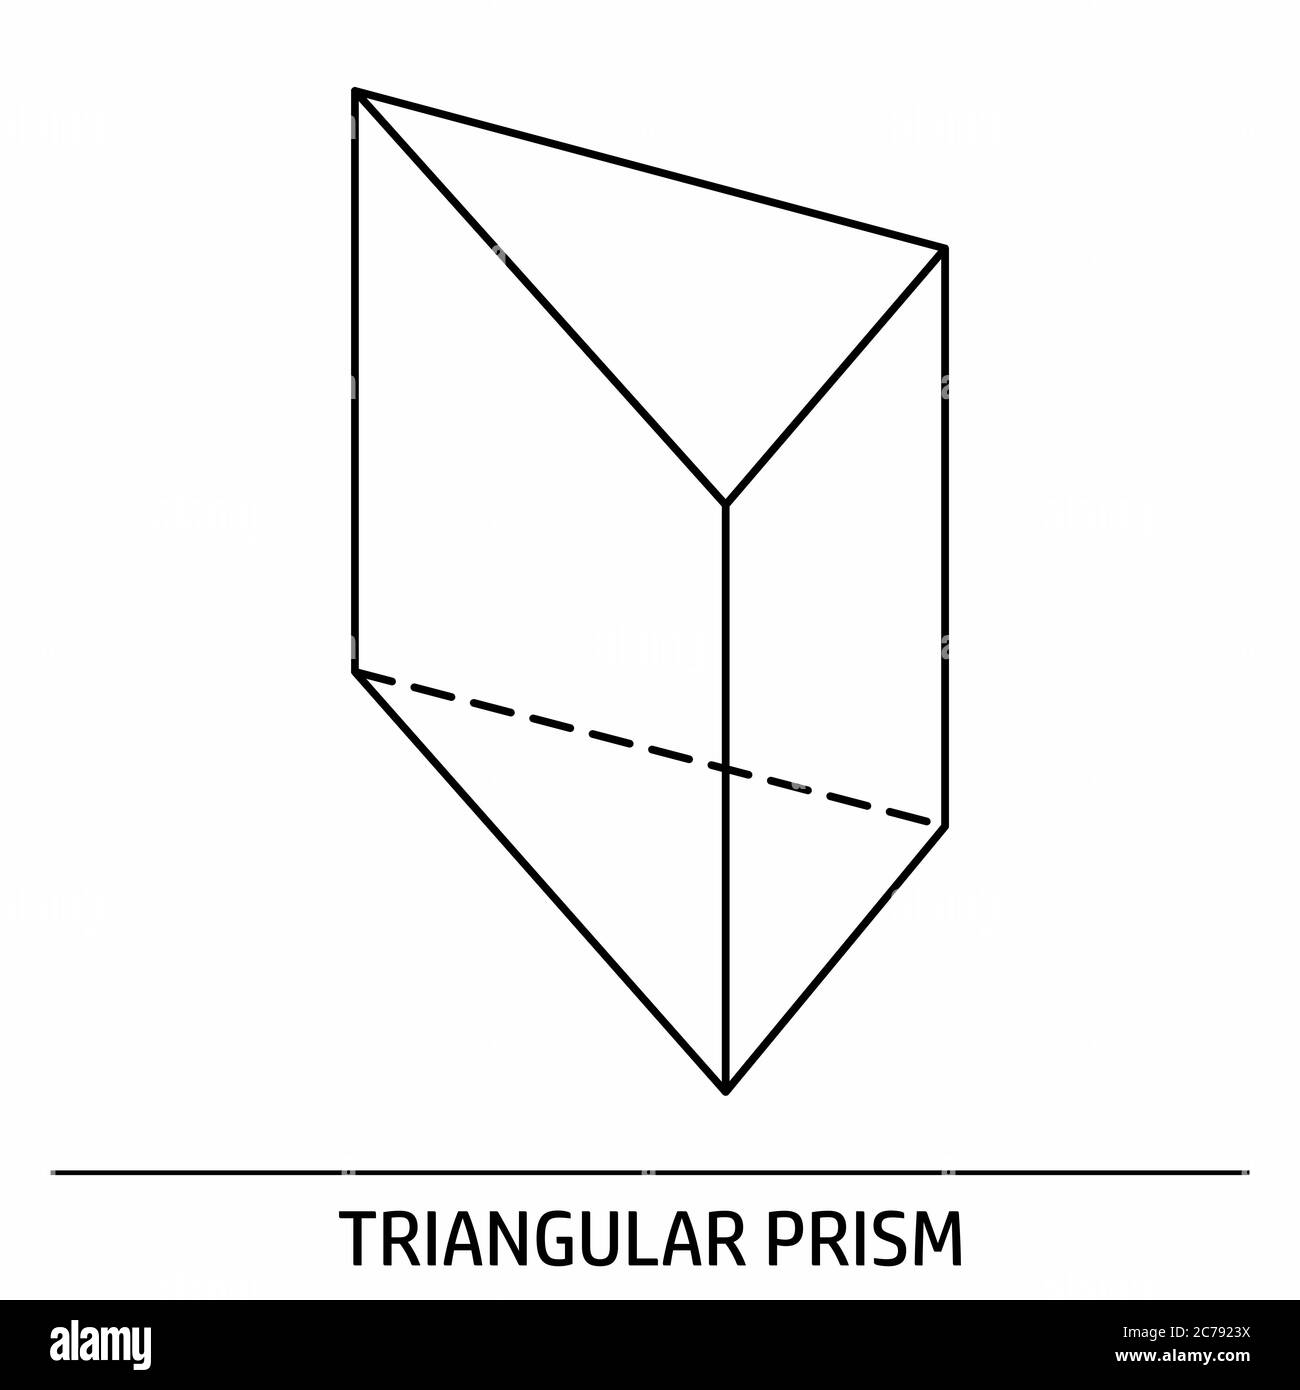 Triangular prism immagini e fotografie stock ad alta risoluzione - Alamy